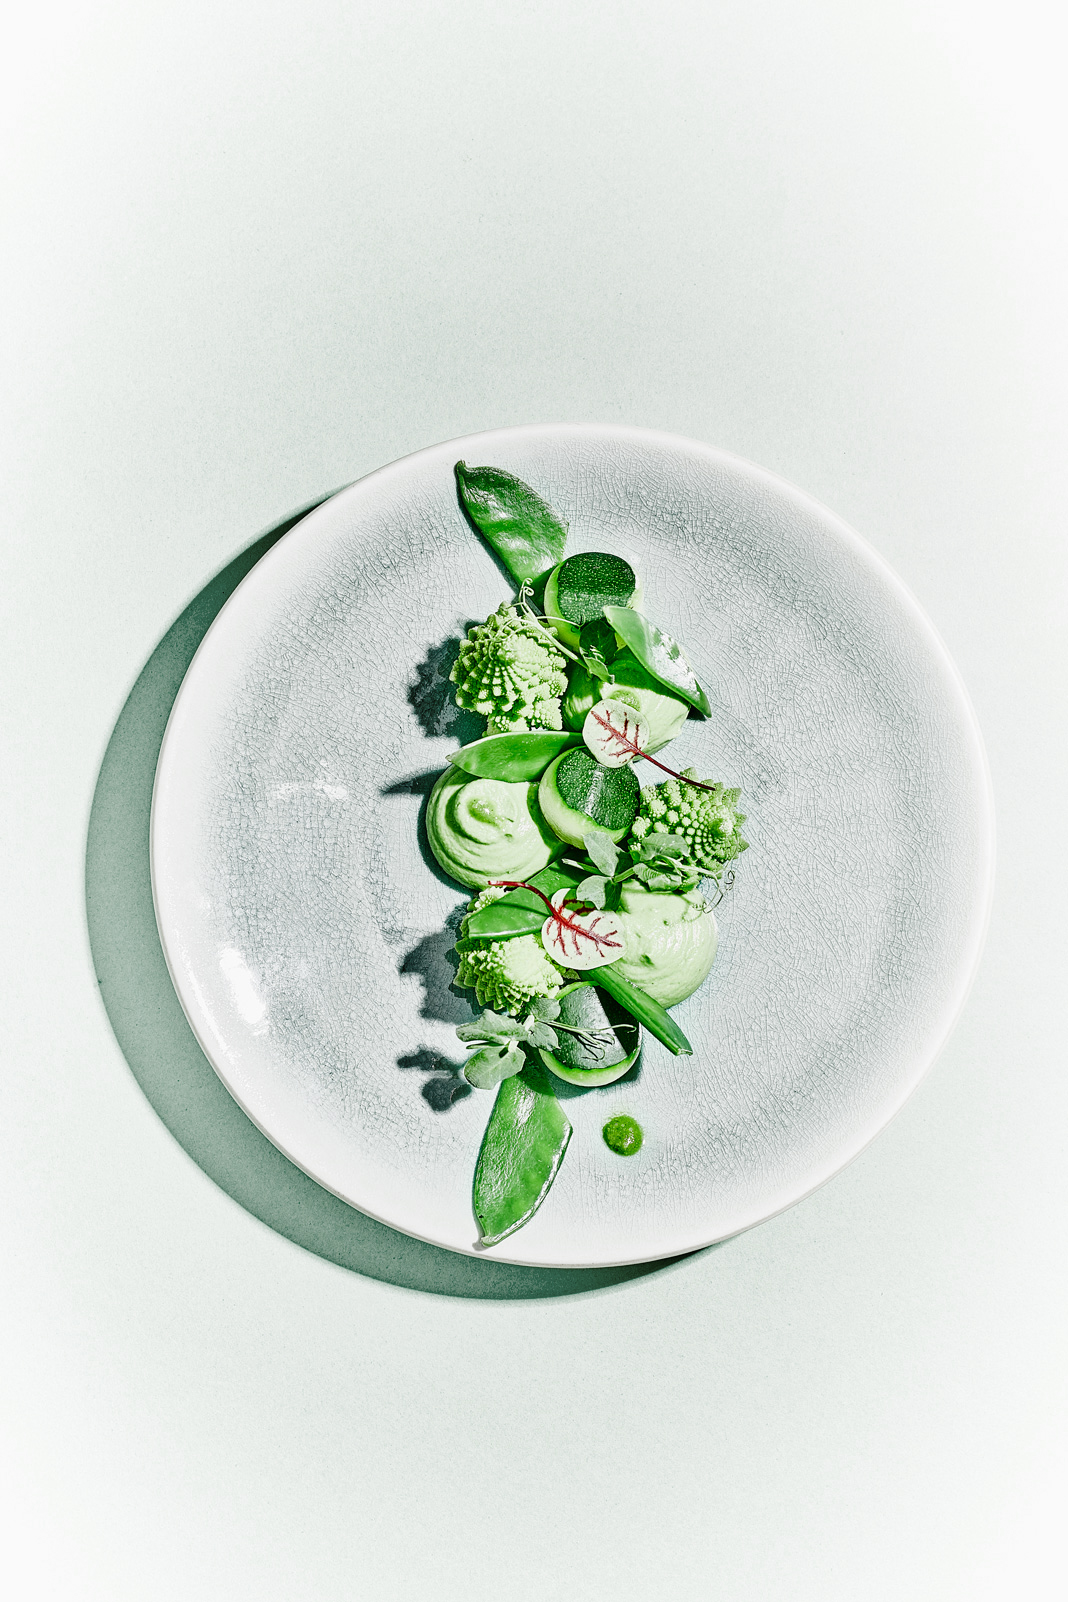 photographie culinaire minimal assiette de composition de courgettes romanesco dégradé de vert gris clair